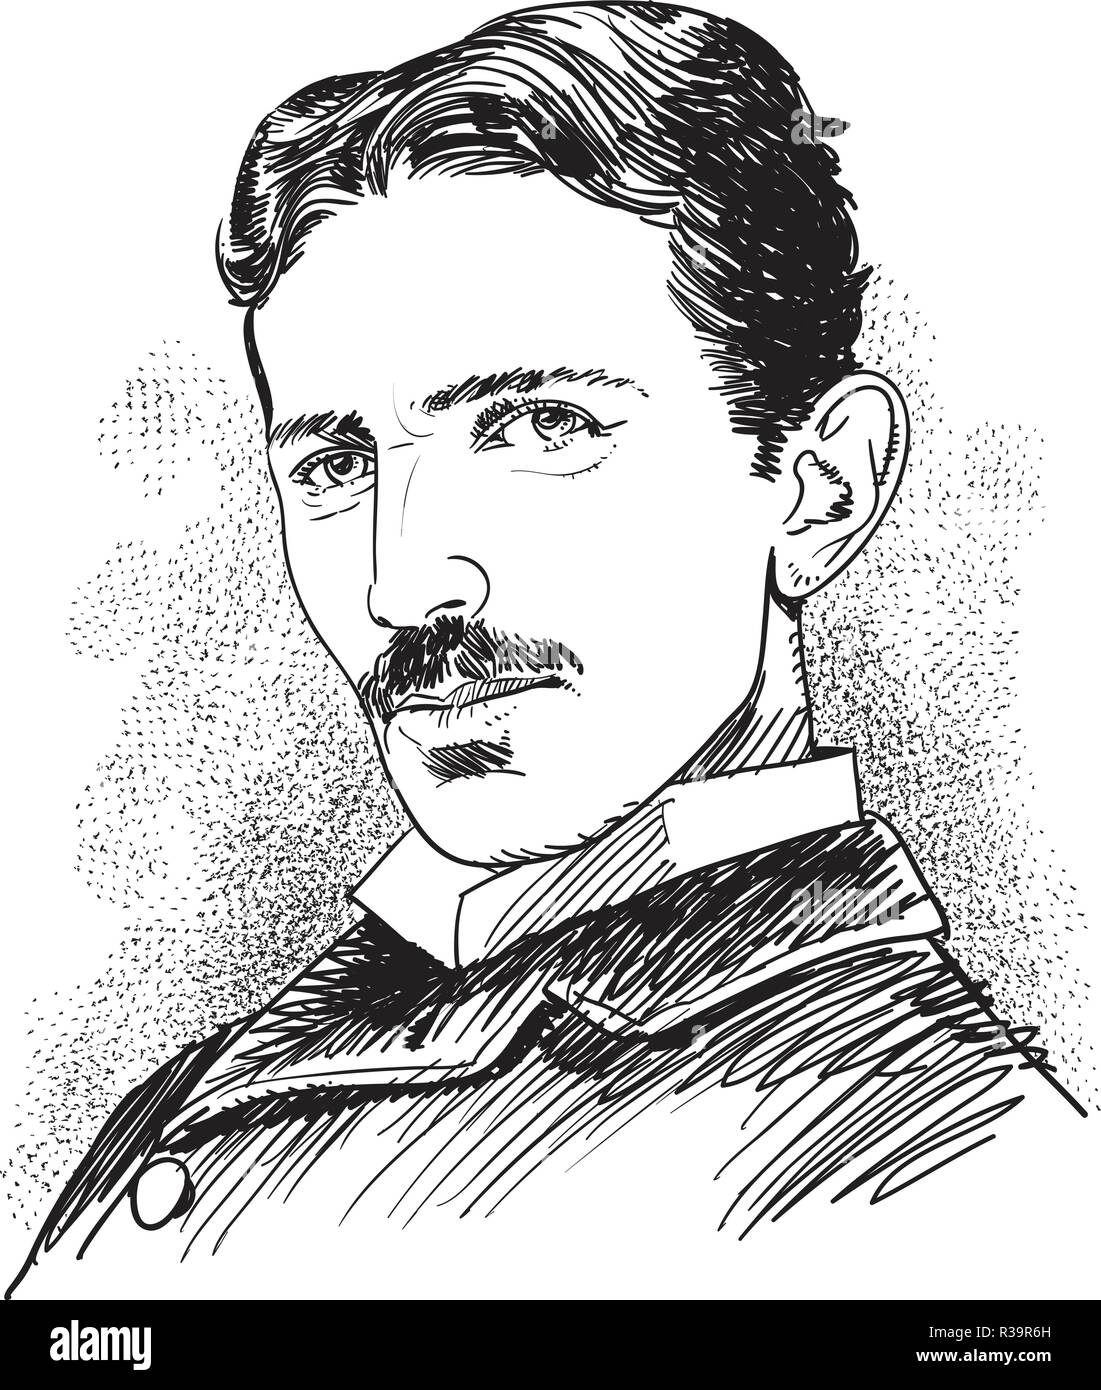 Nicola Tesla, famoso scienziato illustrazione in linea tecnica. Tesla era un inventore Serbian-American, elettriche e ingegnere meccanico, Illustrazione Vettoriale